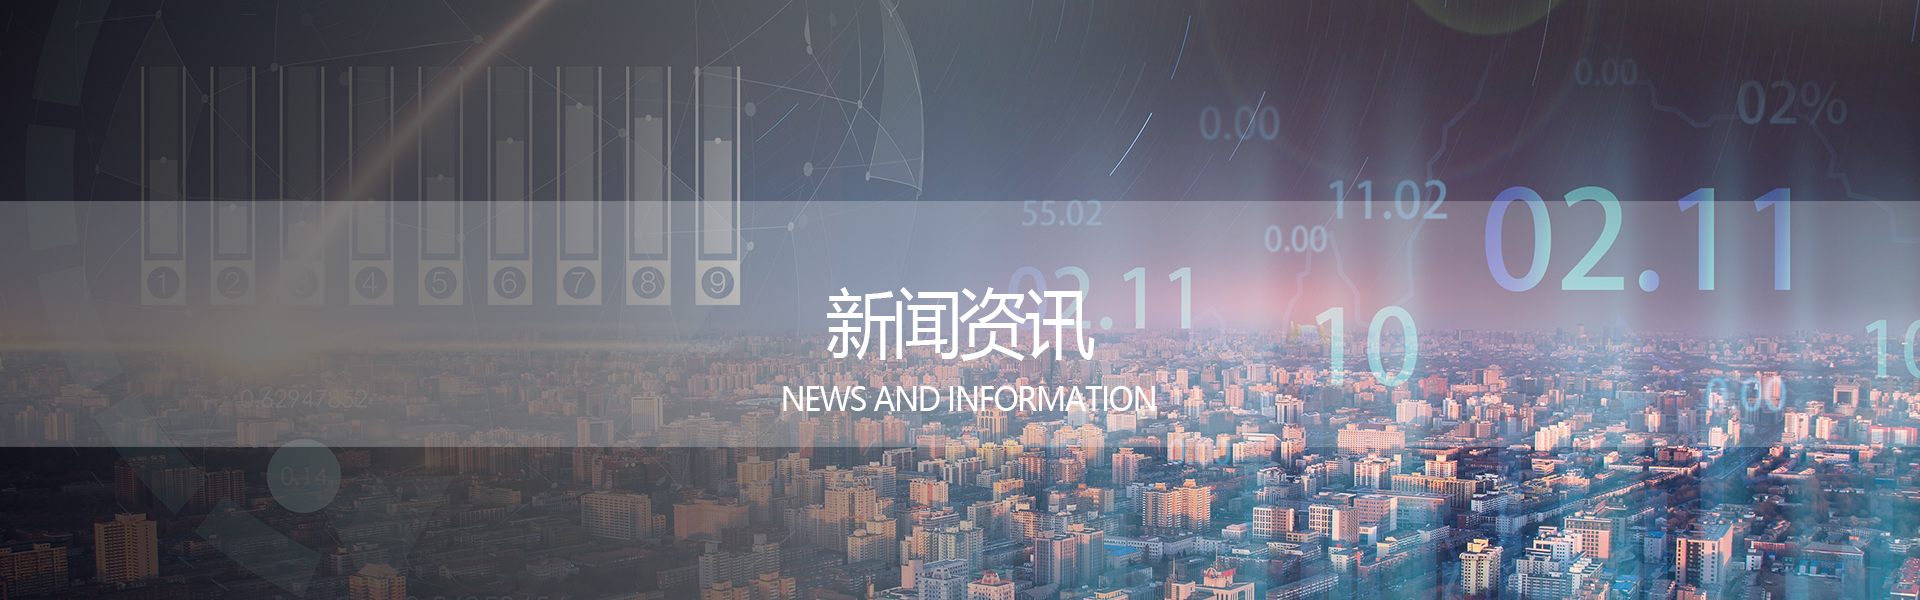 智能音频、无限未来---2020中国音频技术大会成功举办_行业动态_广州市天谱电器有限公司万利达品牌网站